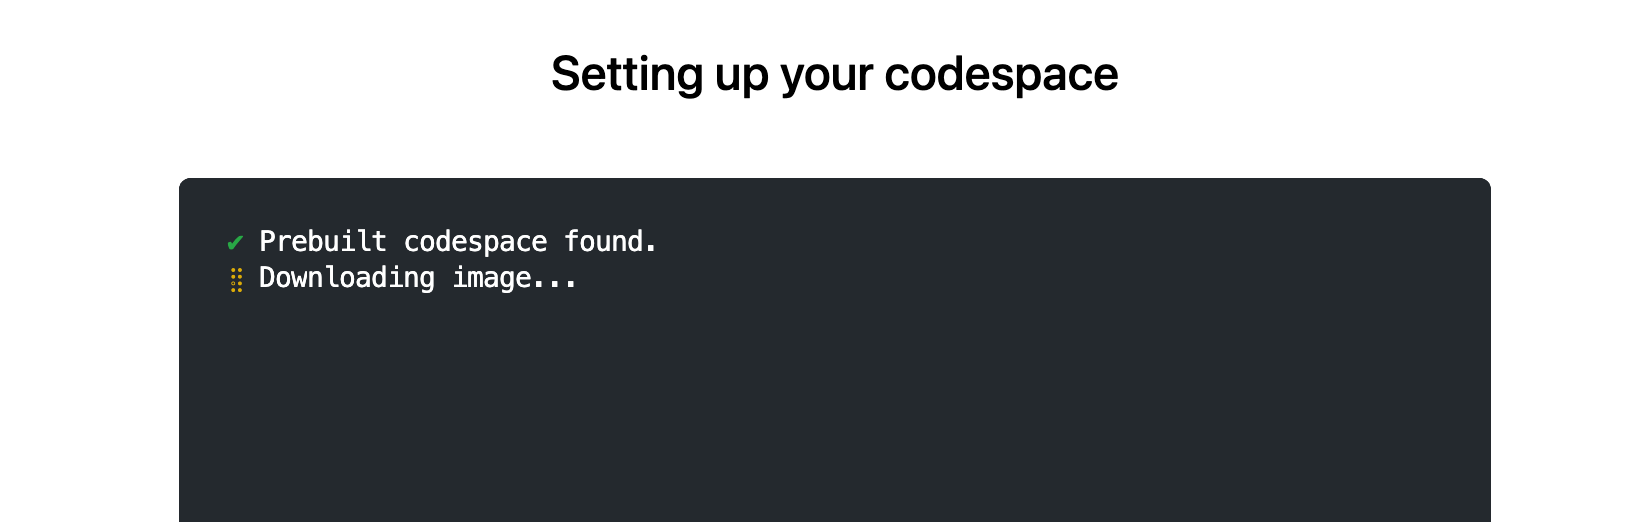 Capture d’écran de la page « Configuration de votre codespace », avec le texte : « Codespace prédéfini trouvé. Téléchargement de l’image. »